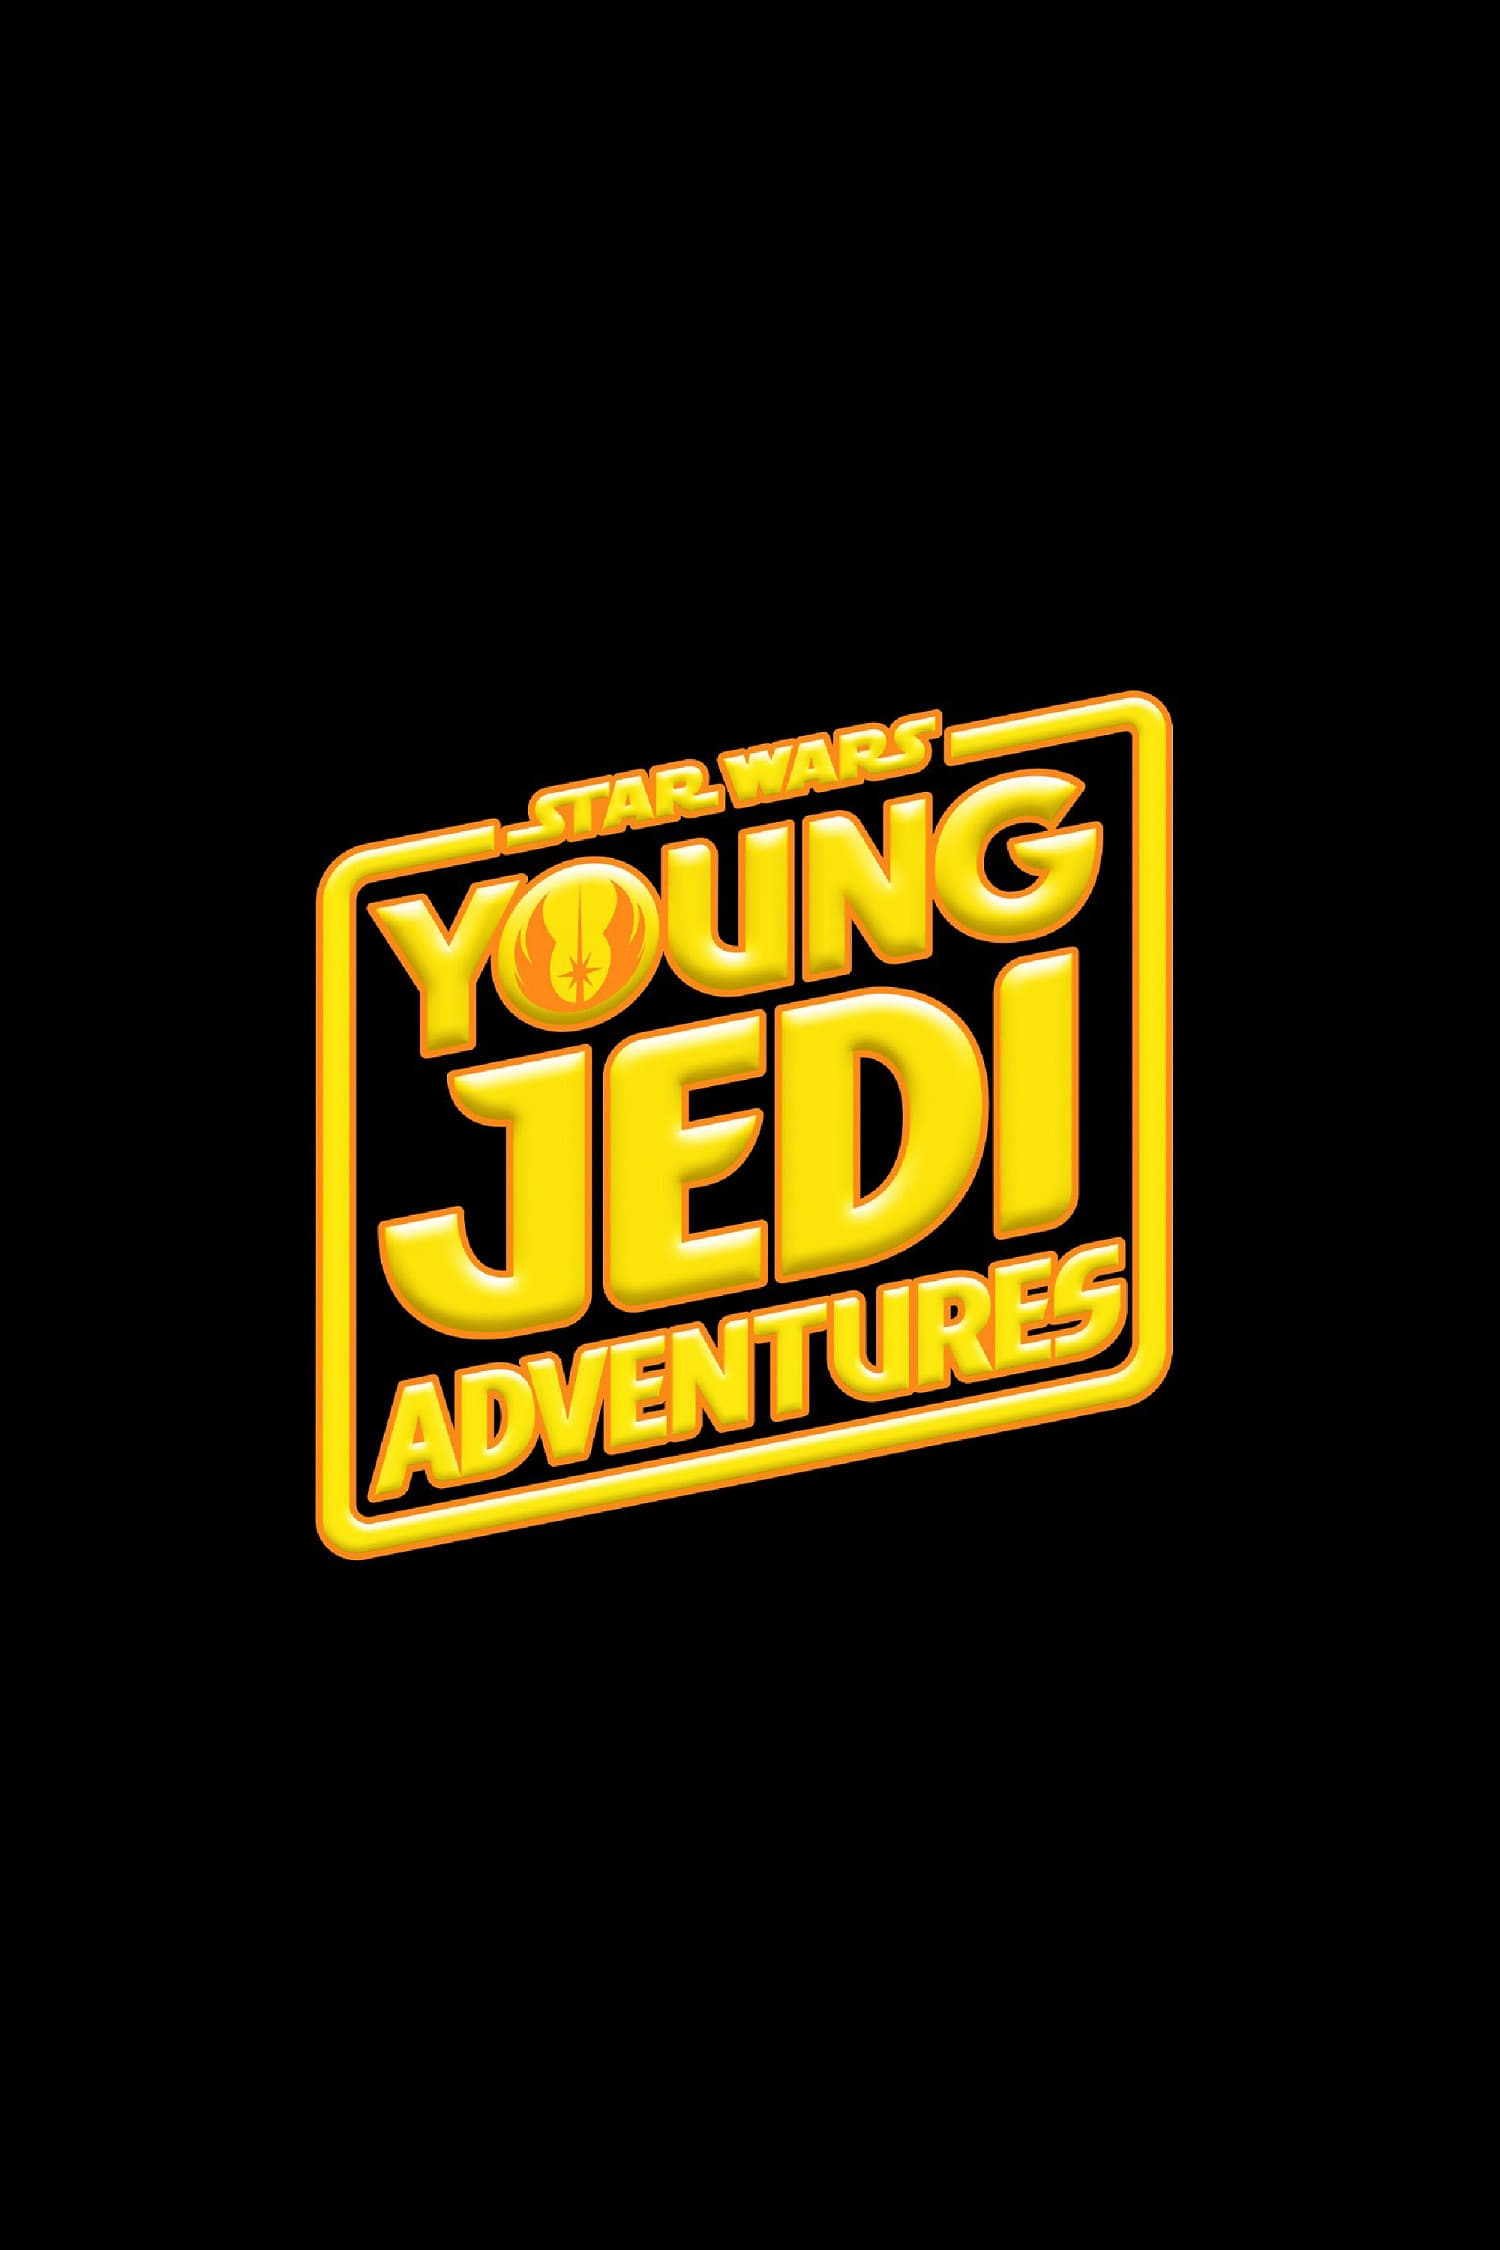 Star Wars : Les Aventures des Petits Jedi